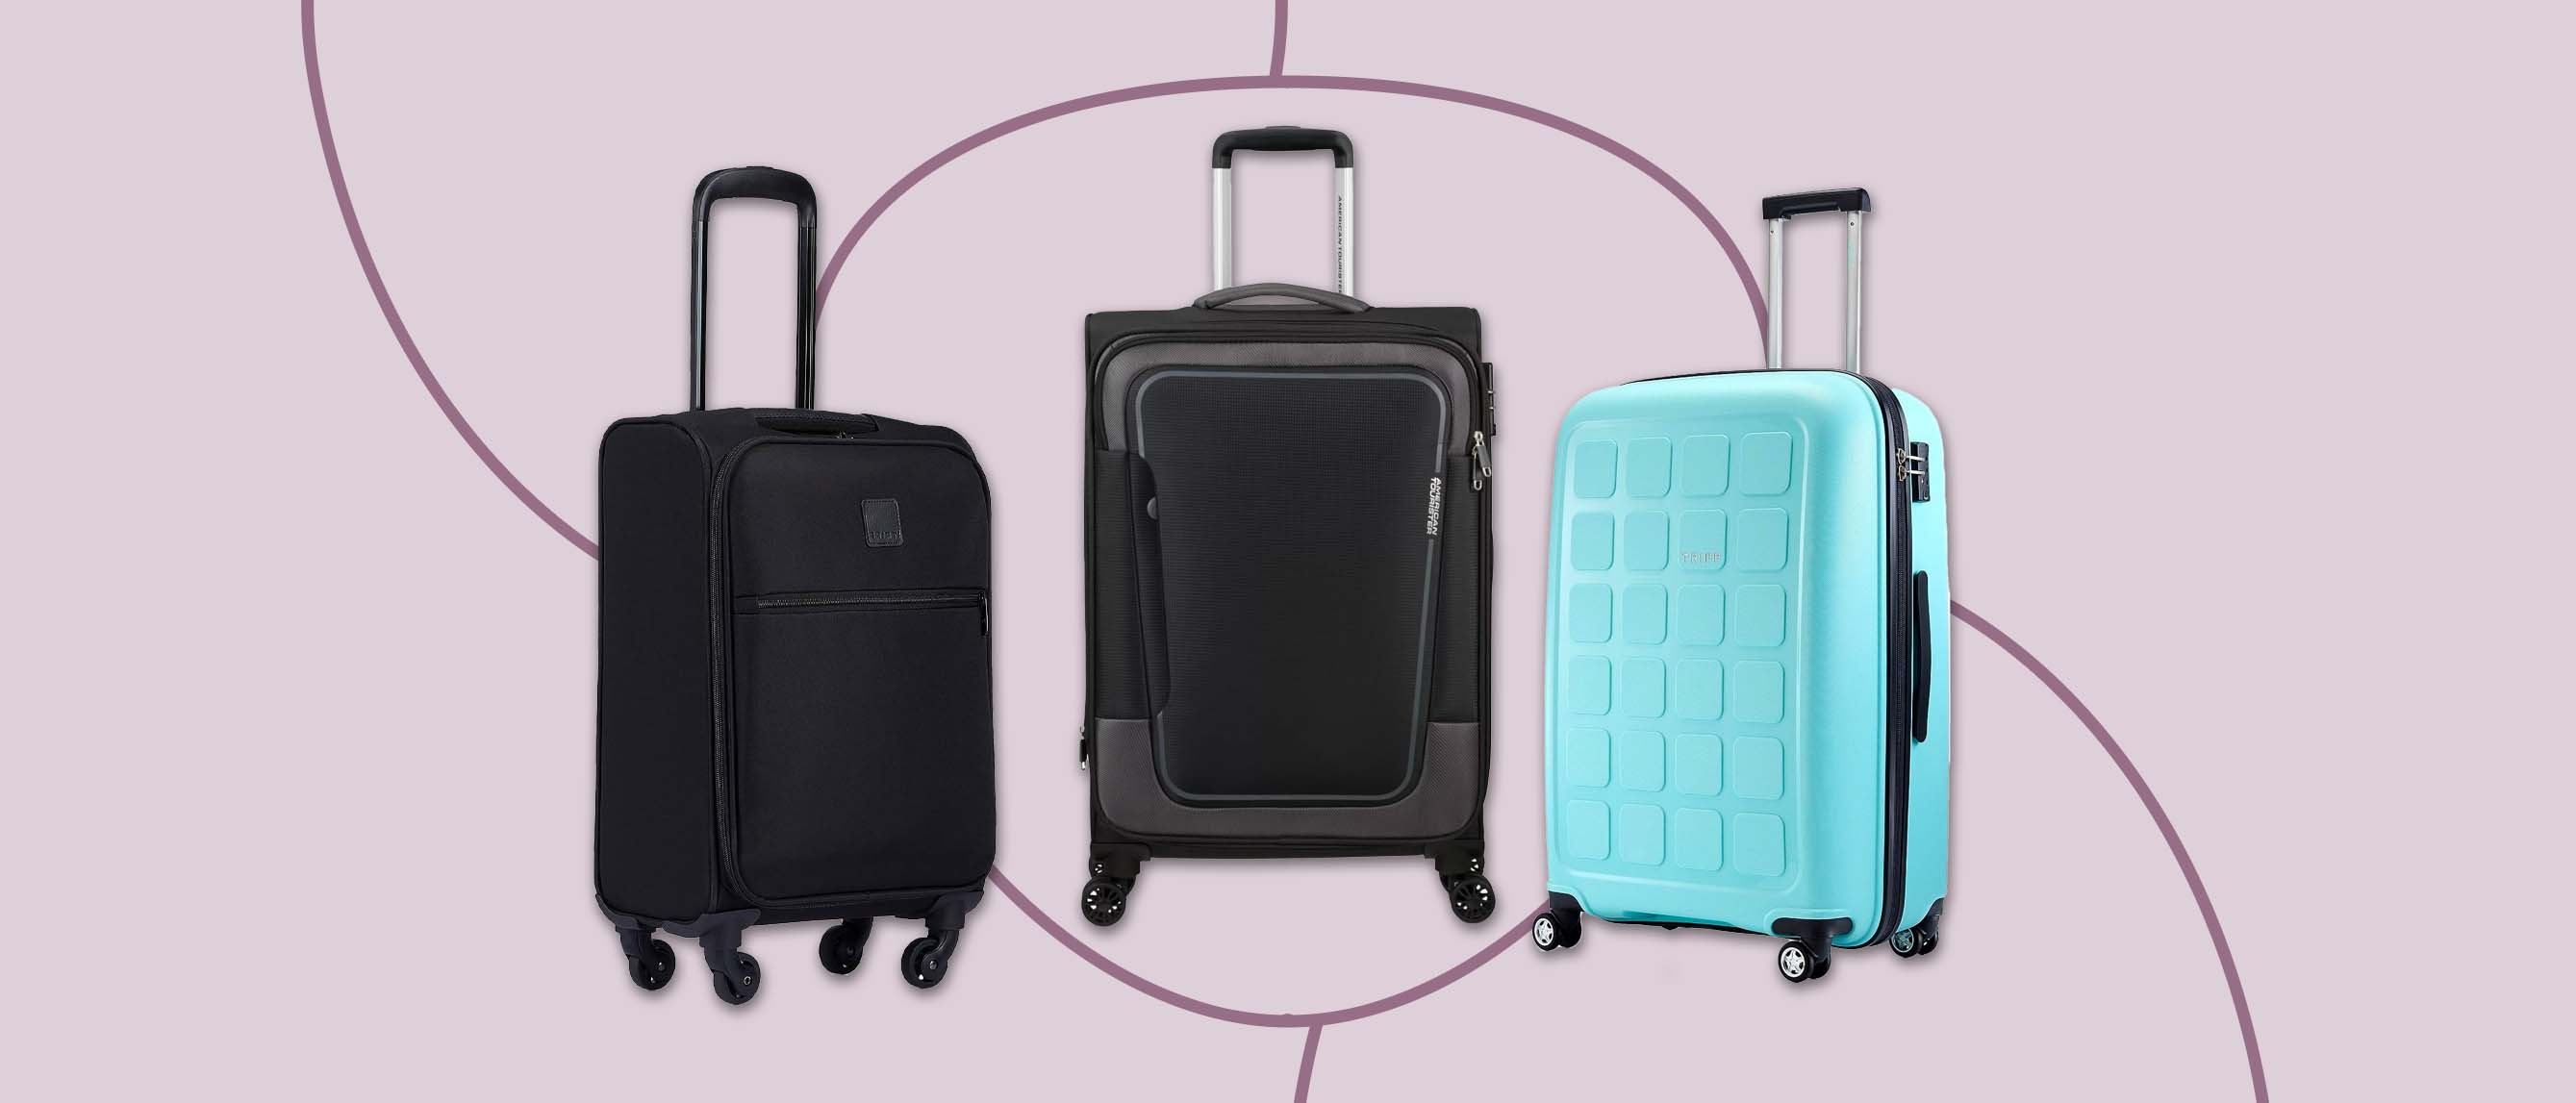 Hanke Brand Designer Backpack Men Women Travel Bag High Quality